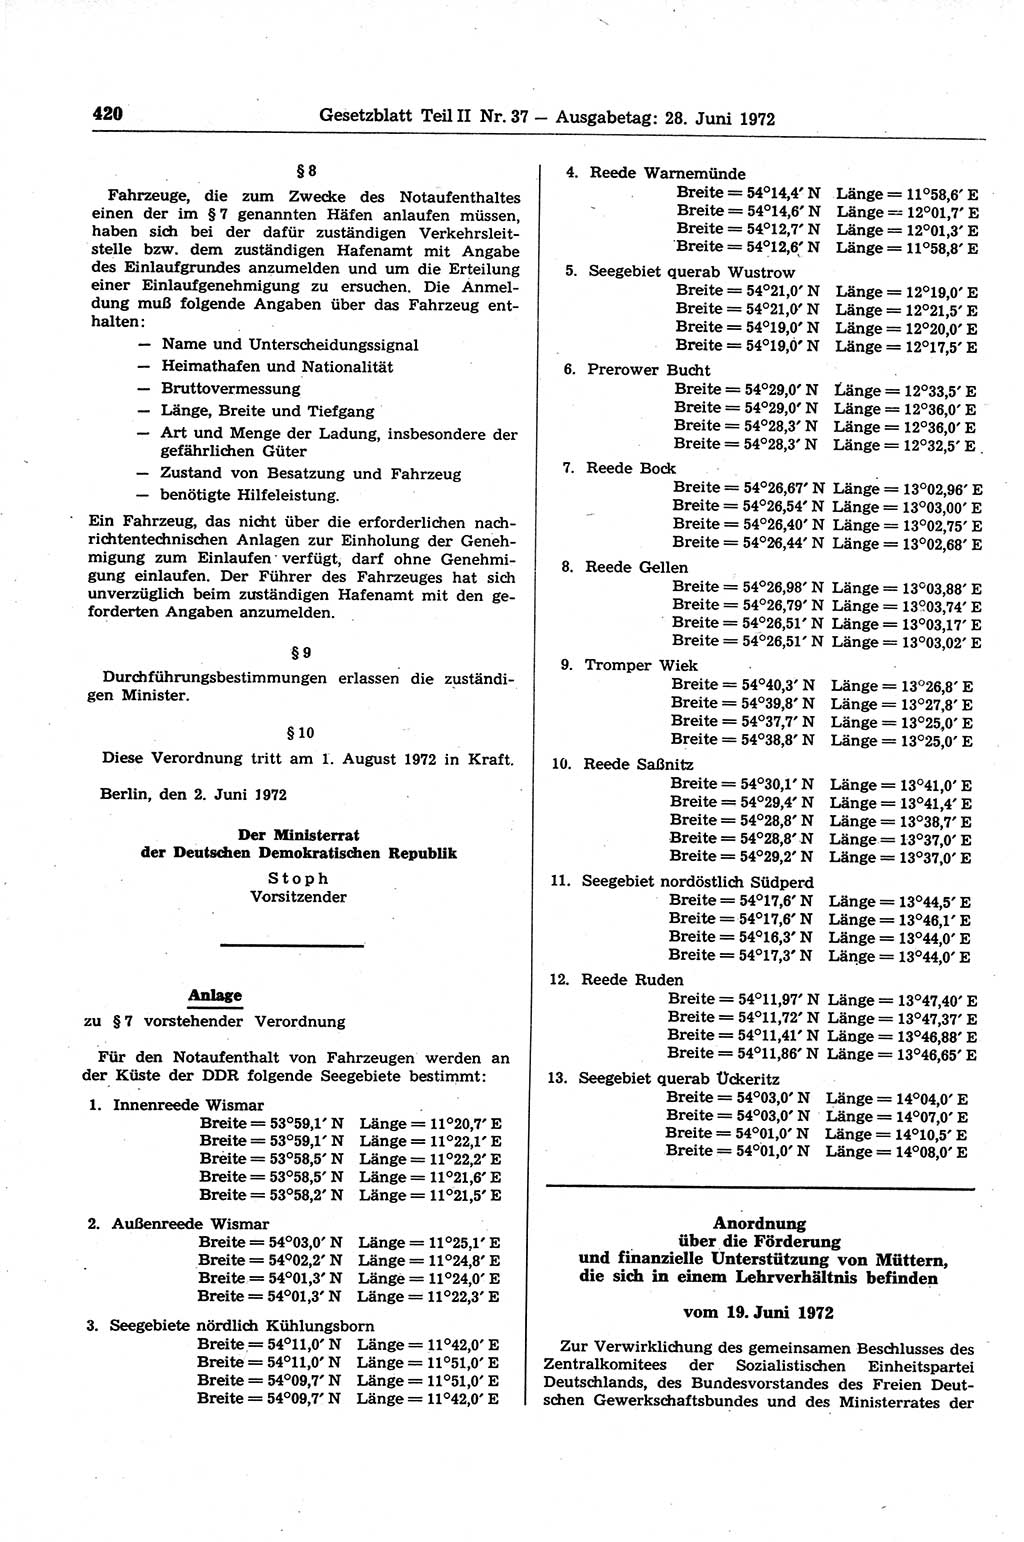 Gesetzblatt (GBl.) der Deutschen Demokratischen Republik (DDR) Teil ⅠⅠ 1972, Seite 420 (GBl. DDR ⅠⅠ 1972, S. 420)